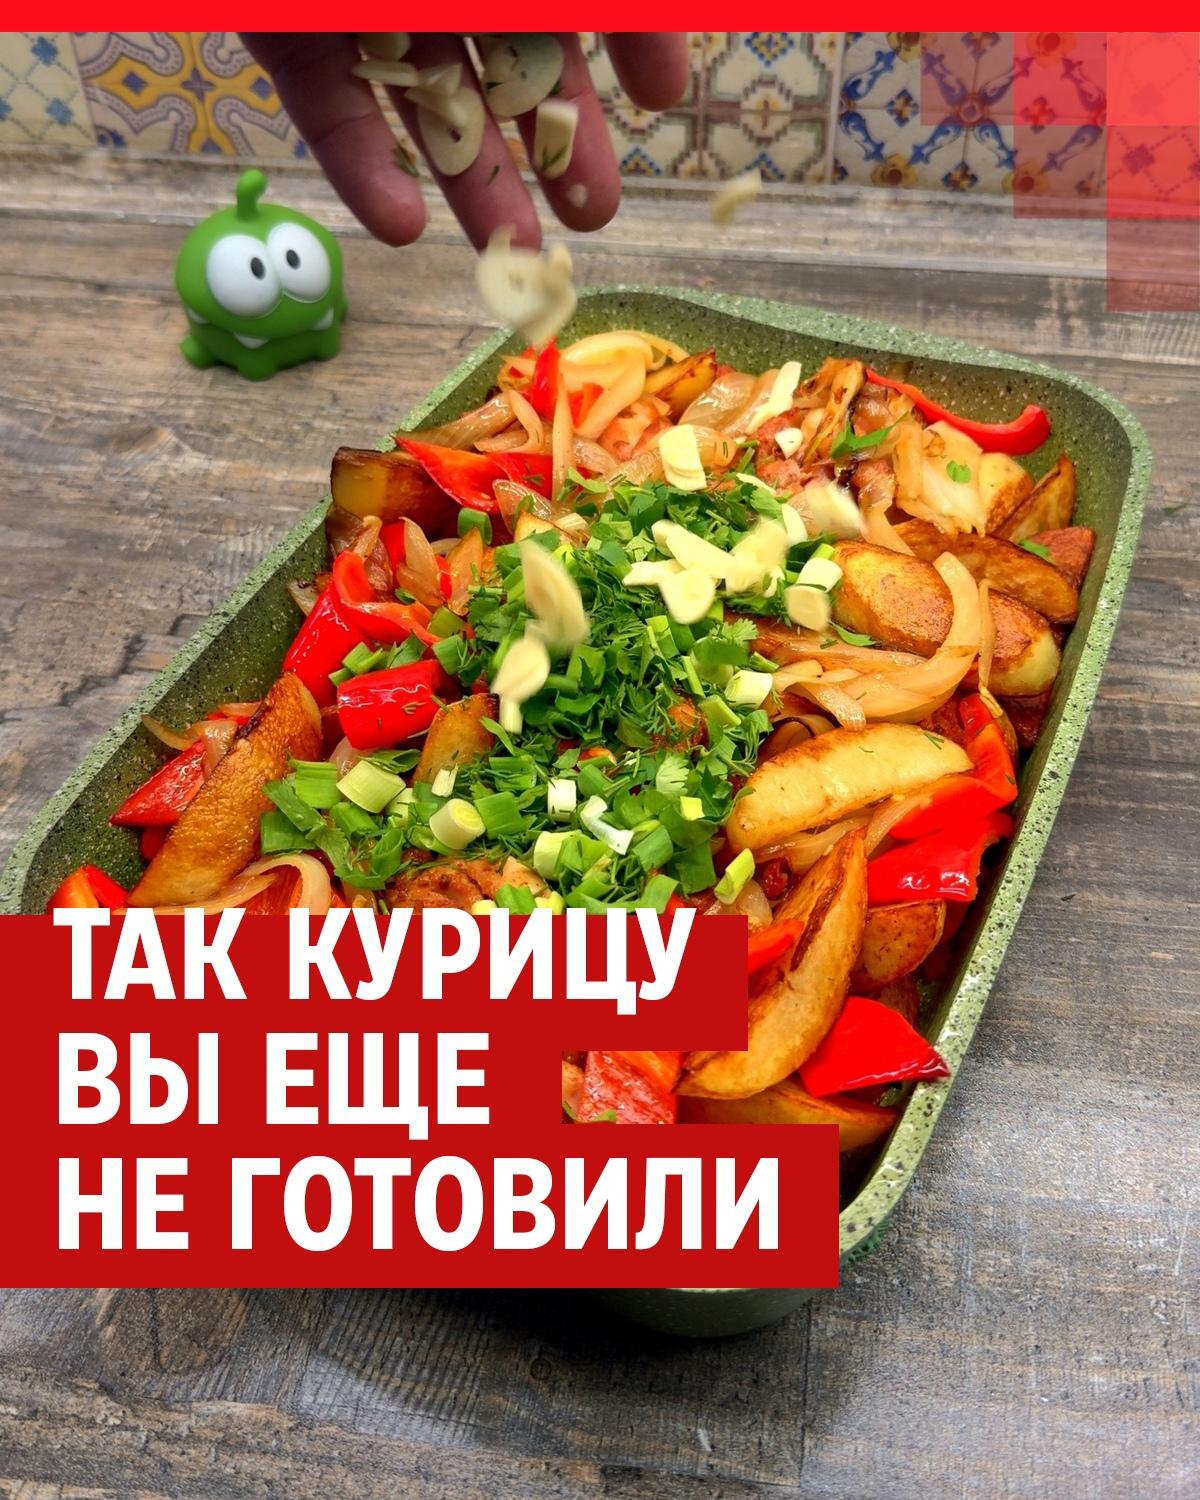 Русская кухня - рецепты с фото. Русские национальные блюда, лучшие рецепты.